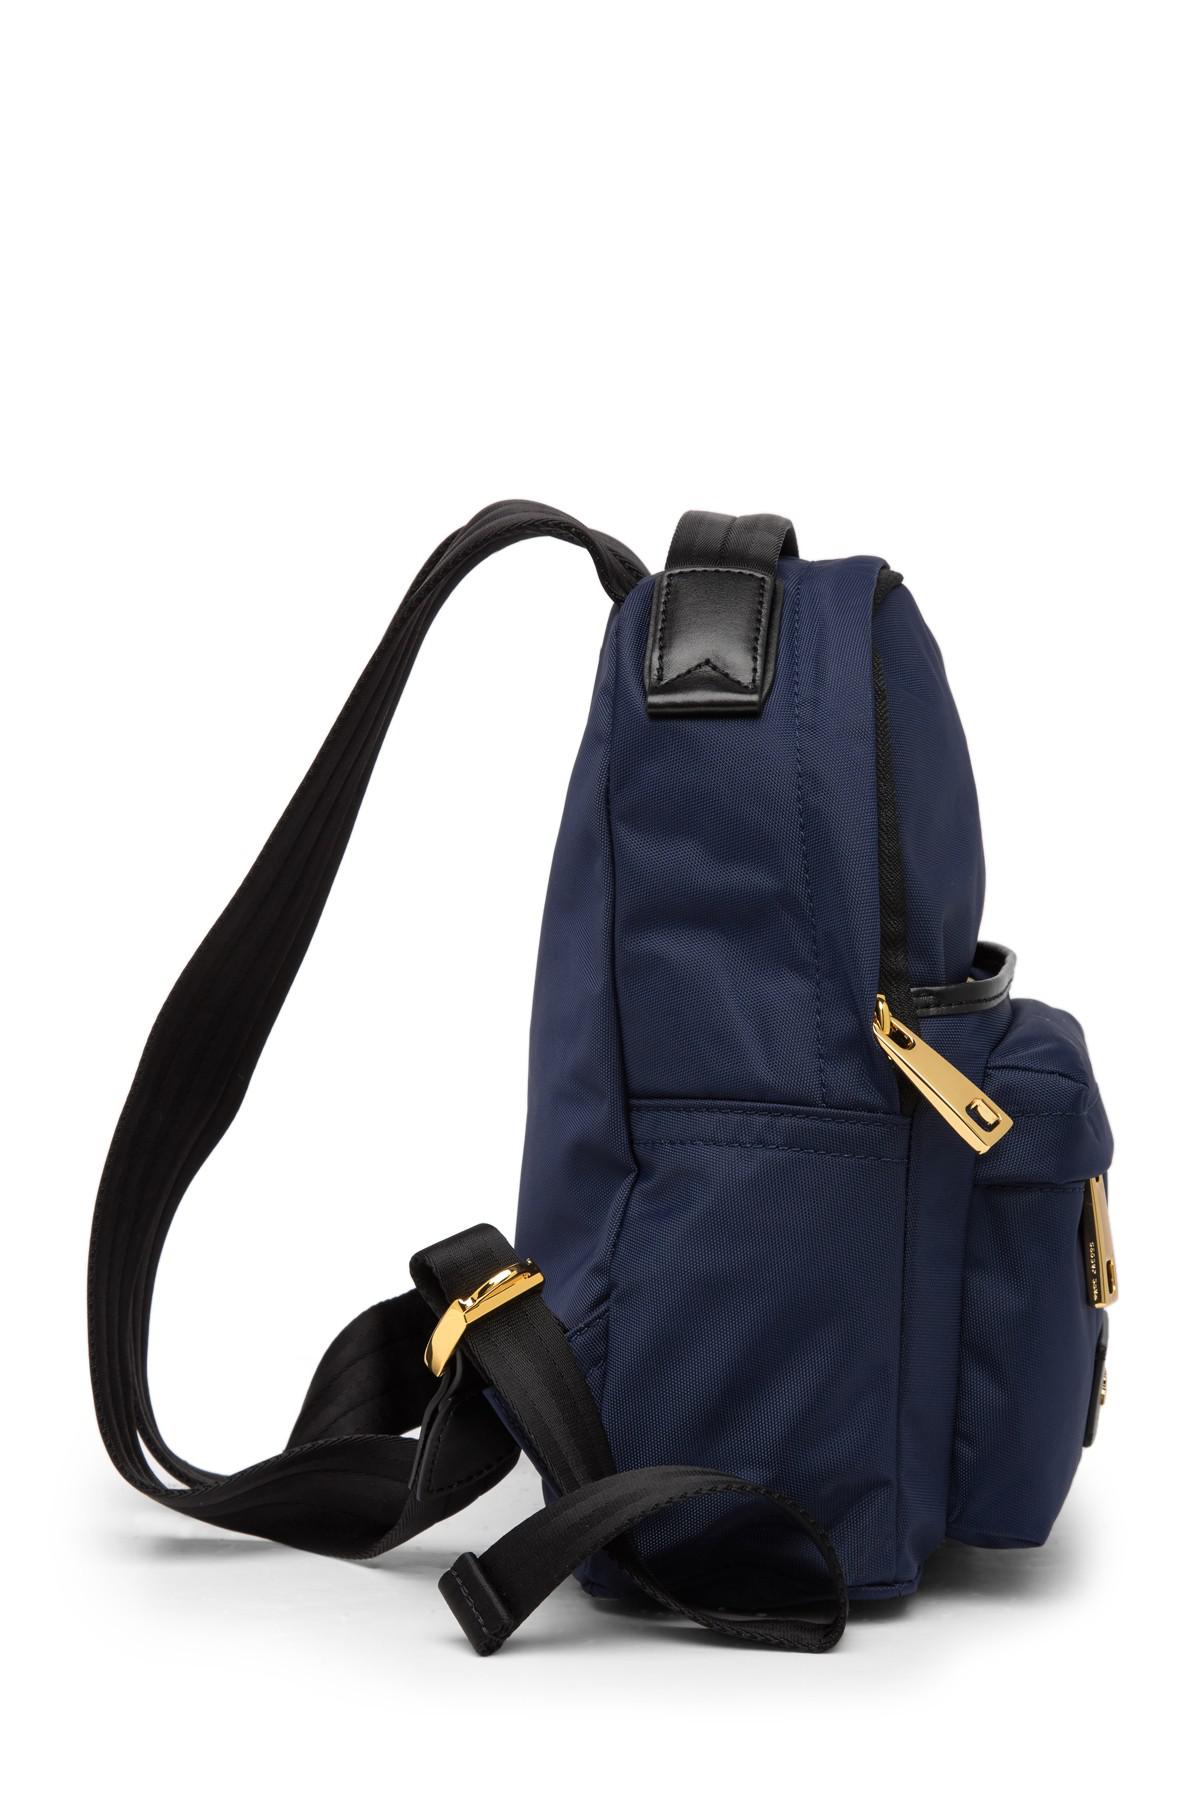 Marc Jacobs Nylon Varsity Mini Backpack in Blue